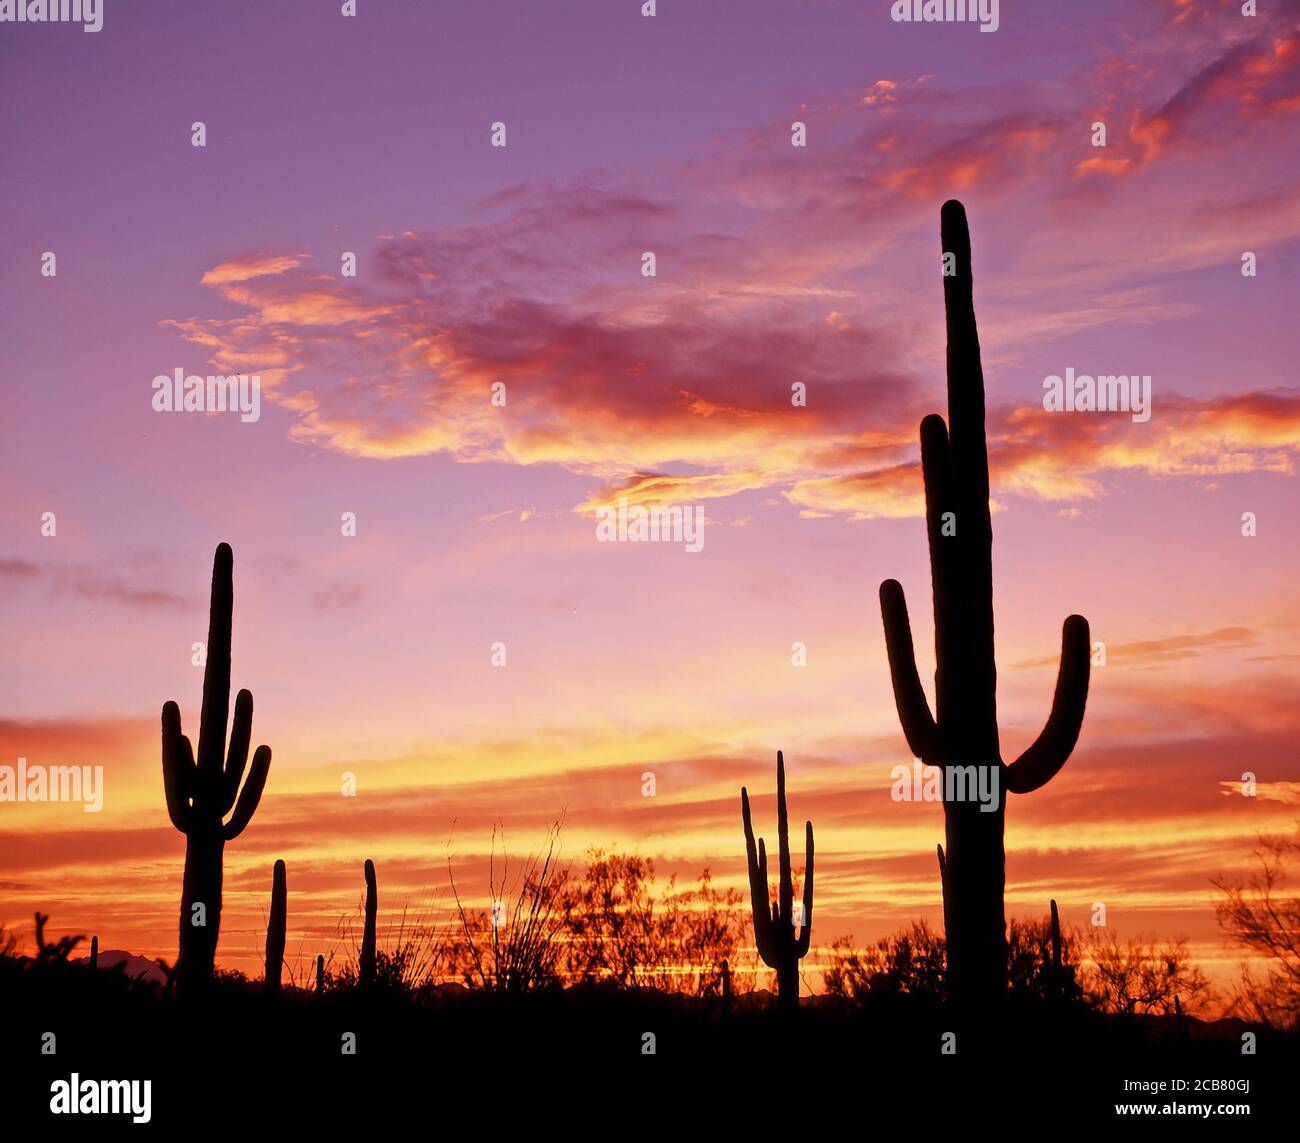 Cactua silhouetted aganist ein Sonnenuntergang Himmel, in Organ Pipe Cactus National Monument in der Sonoran Wüste im Süden von Arizona in den Vereinigten Staaten Stockfoto